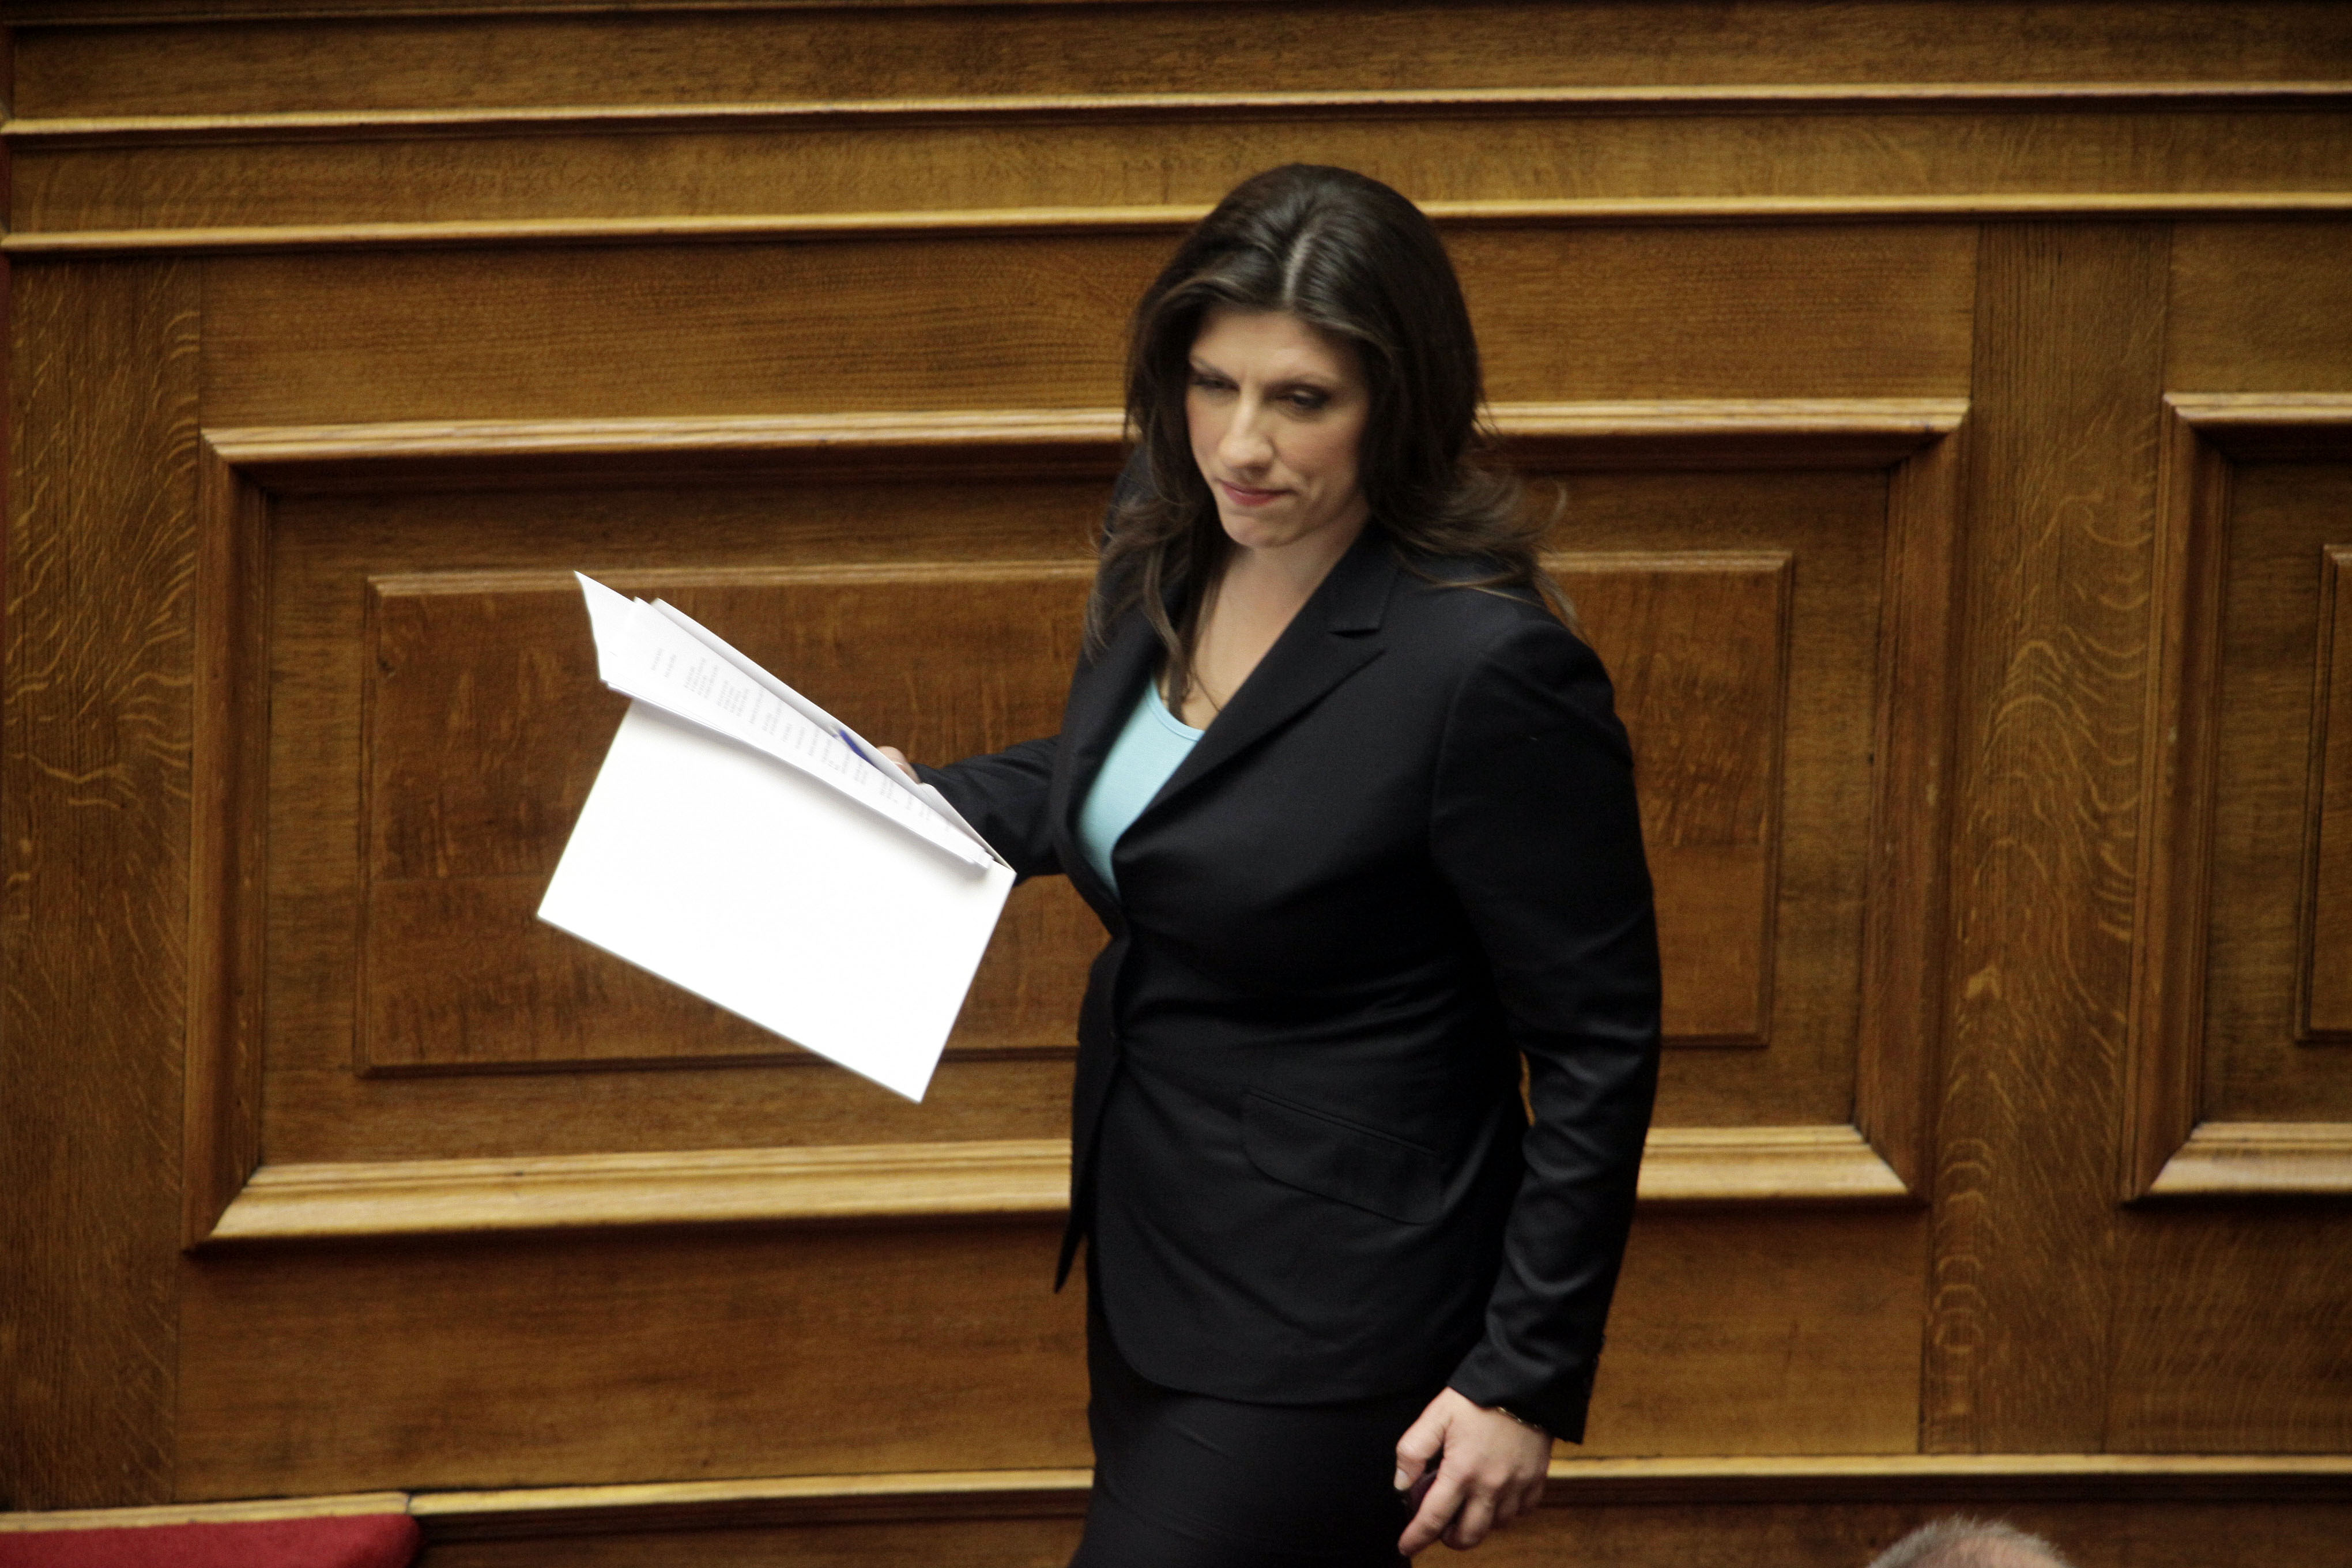 Ζωή Κωνσταντοπούλου: " Οφείλουμε να ενημερώσουμε πλήρως τον λαό για τον εκβιασμό των εταίρων"